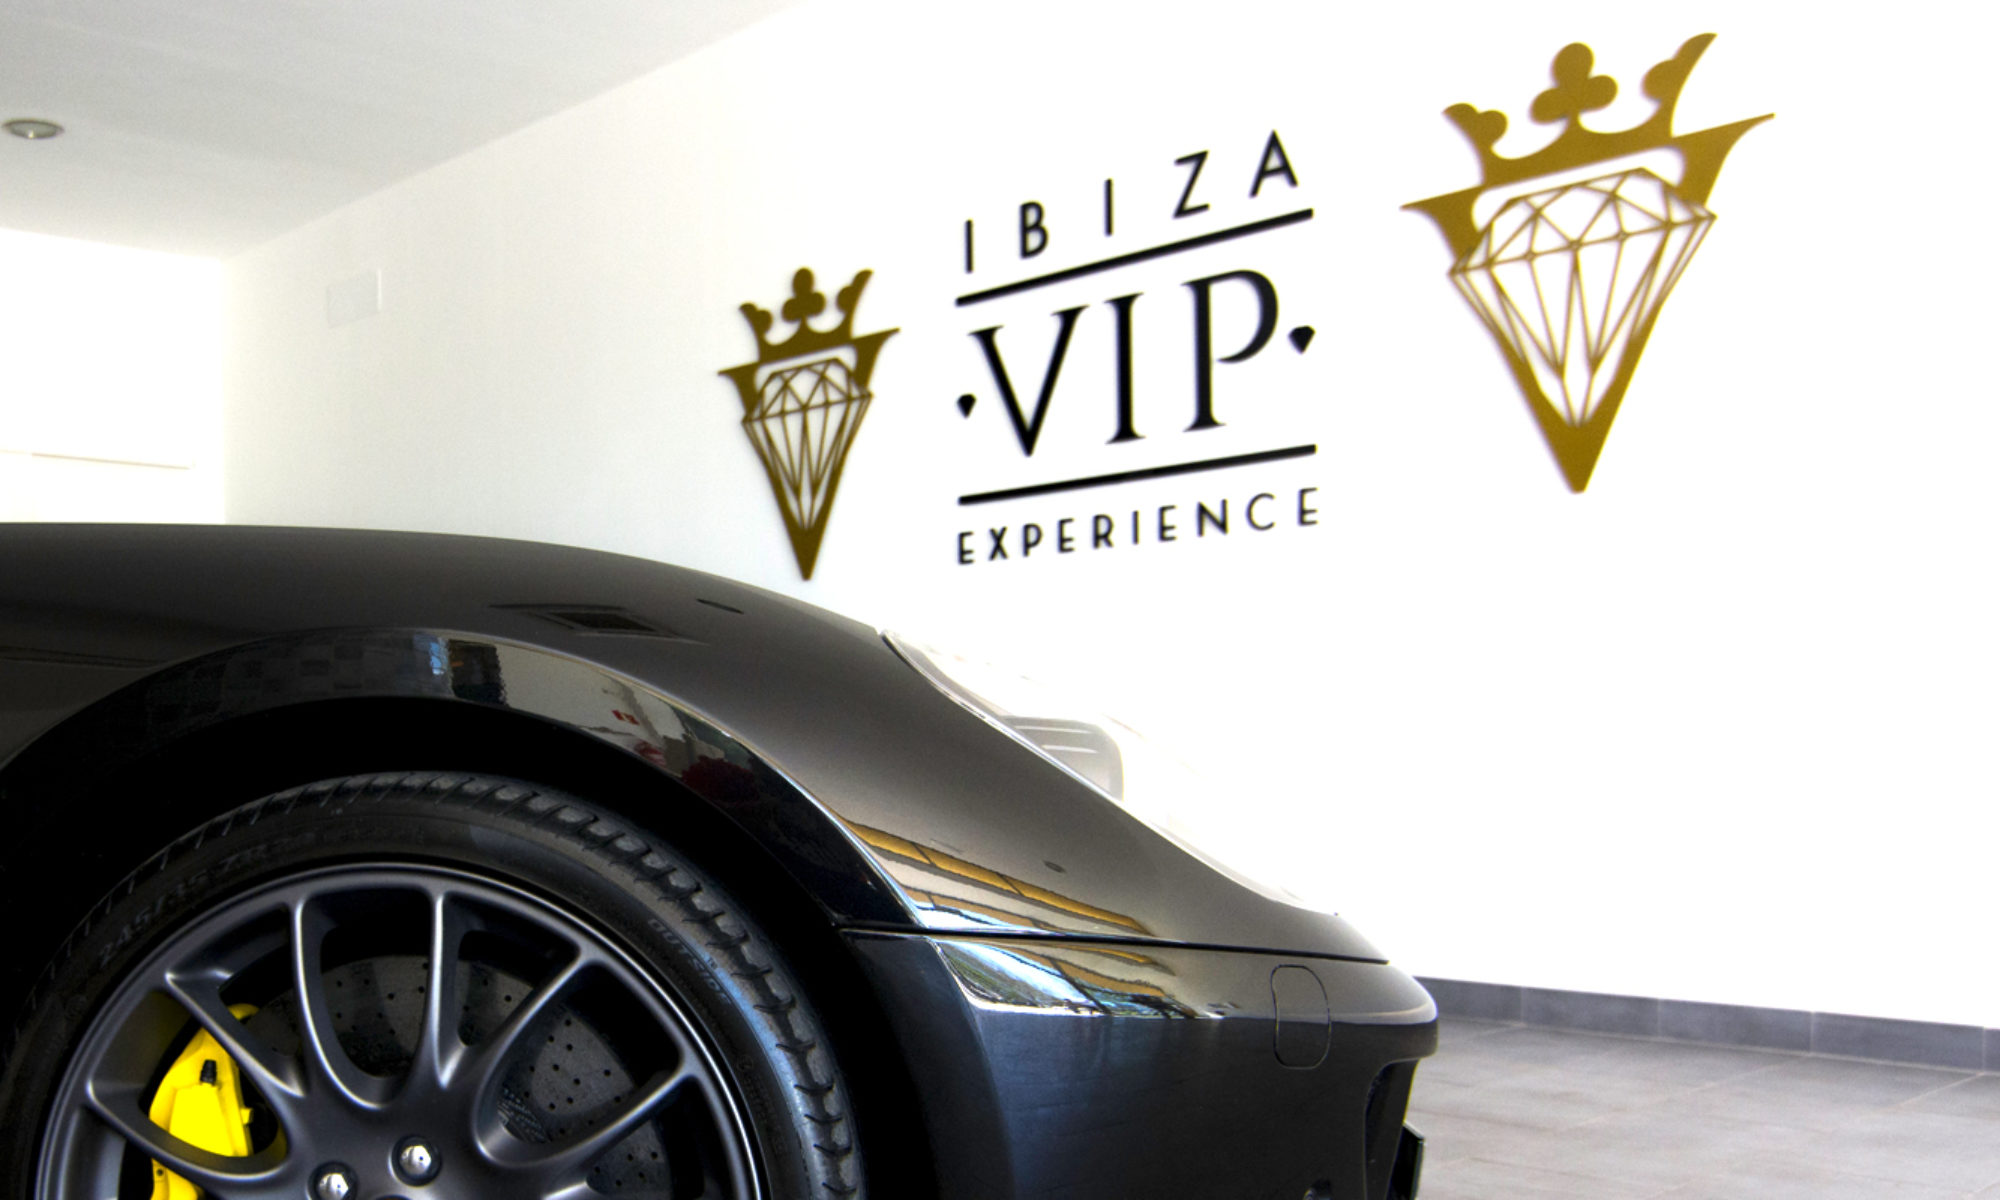 Ibiza VIP Blog in English